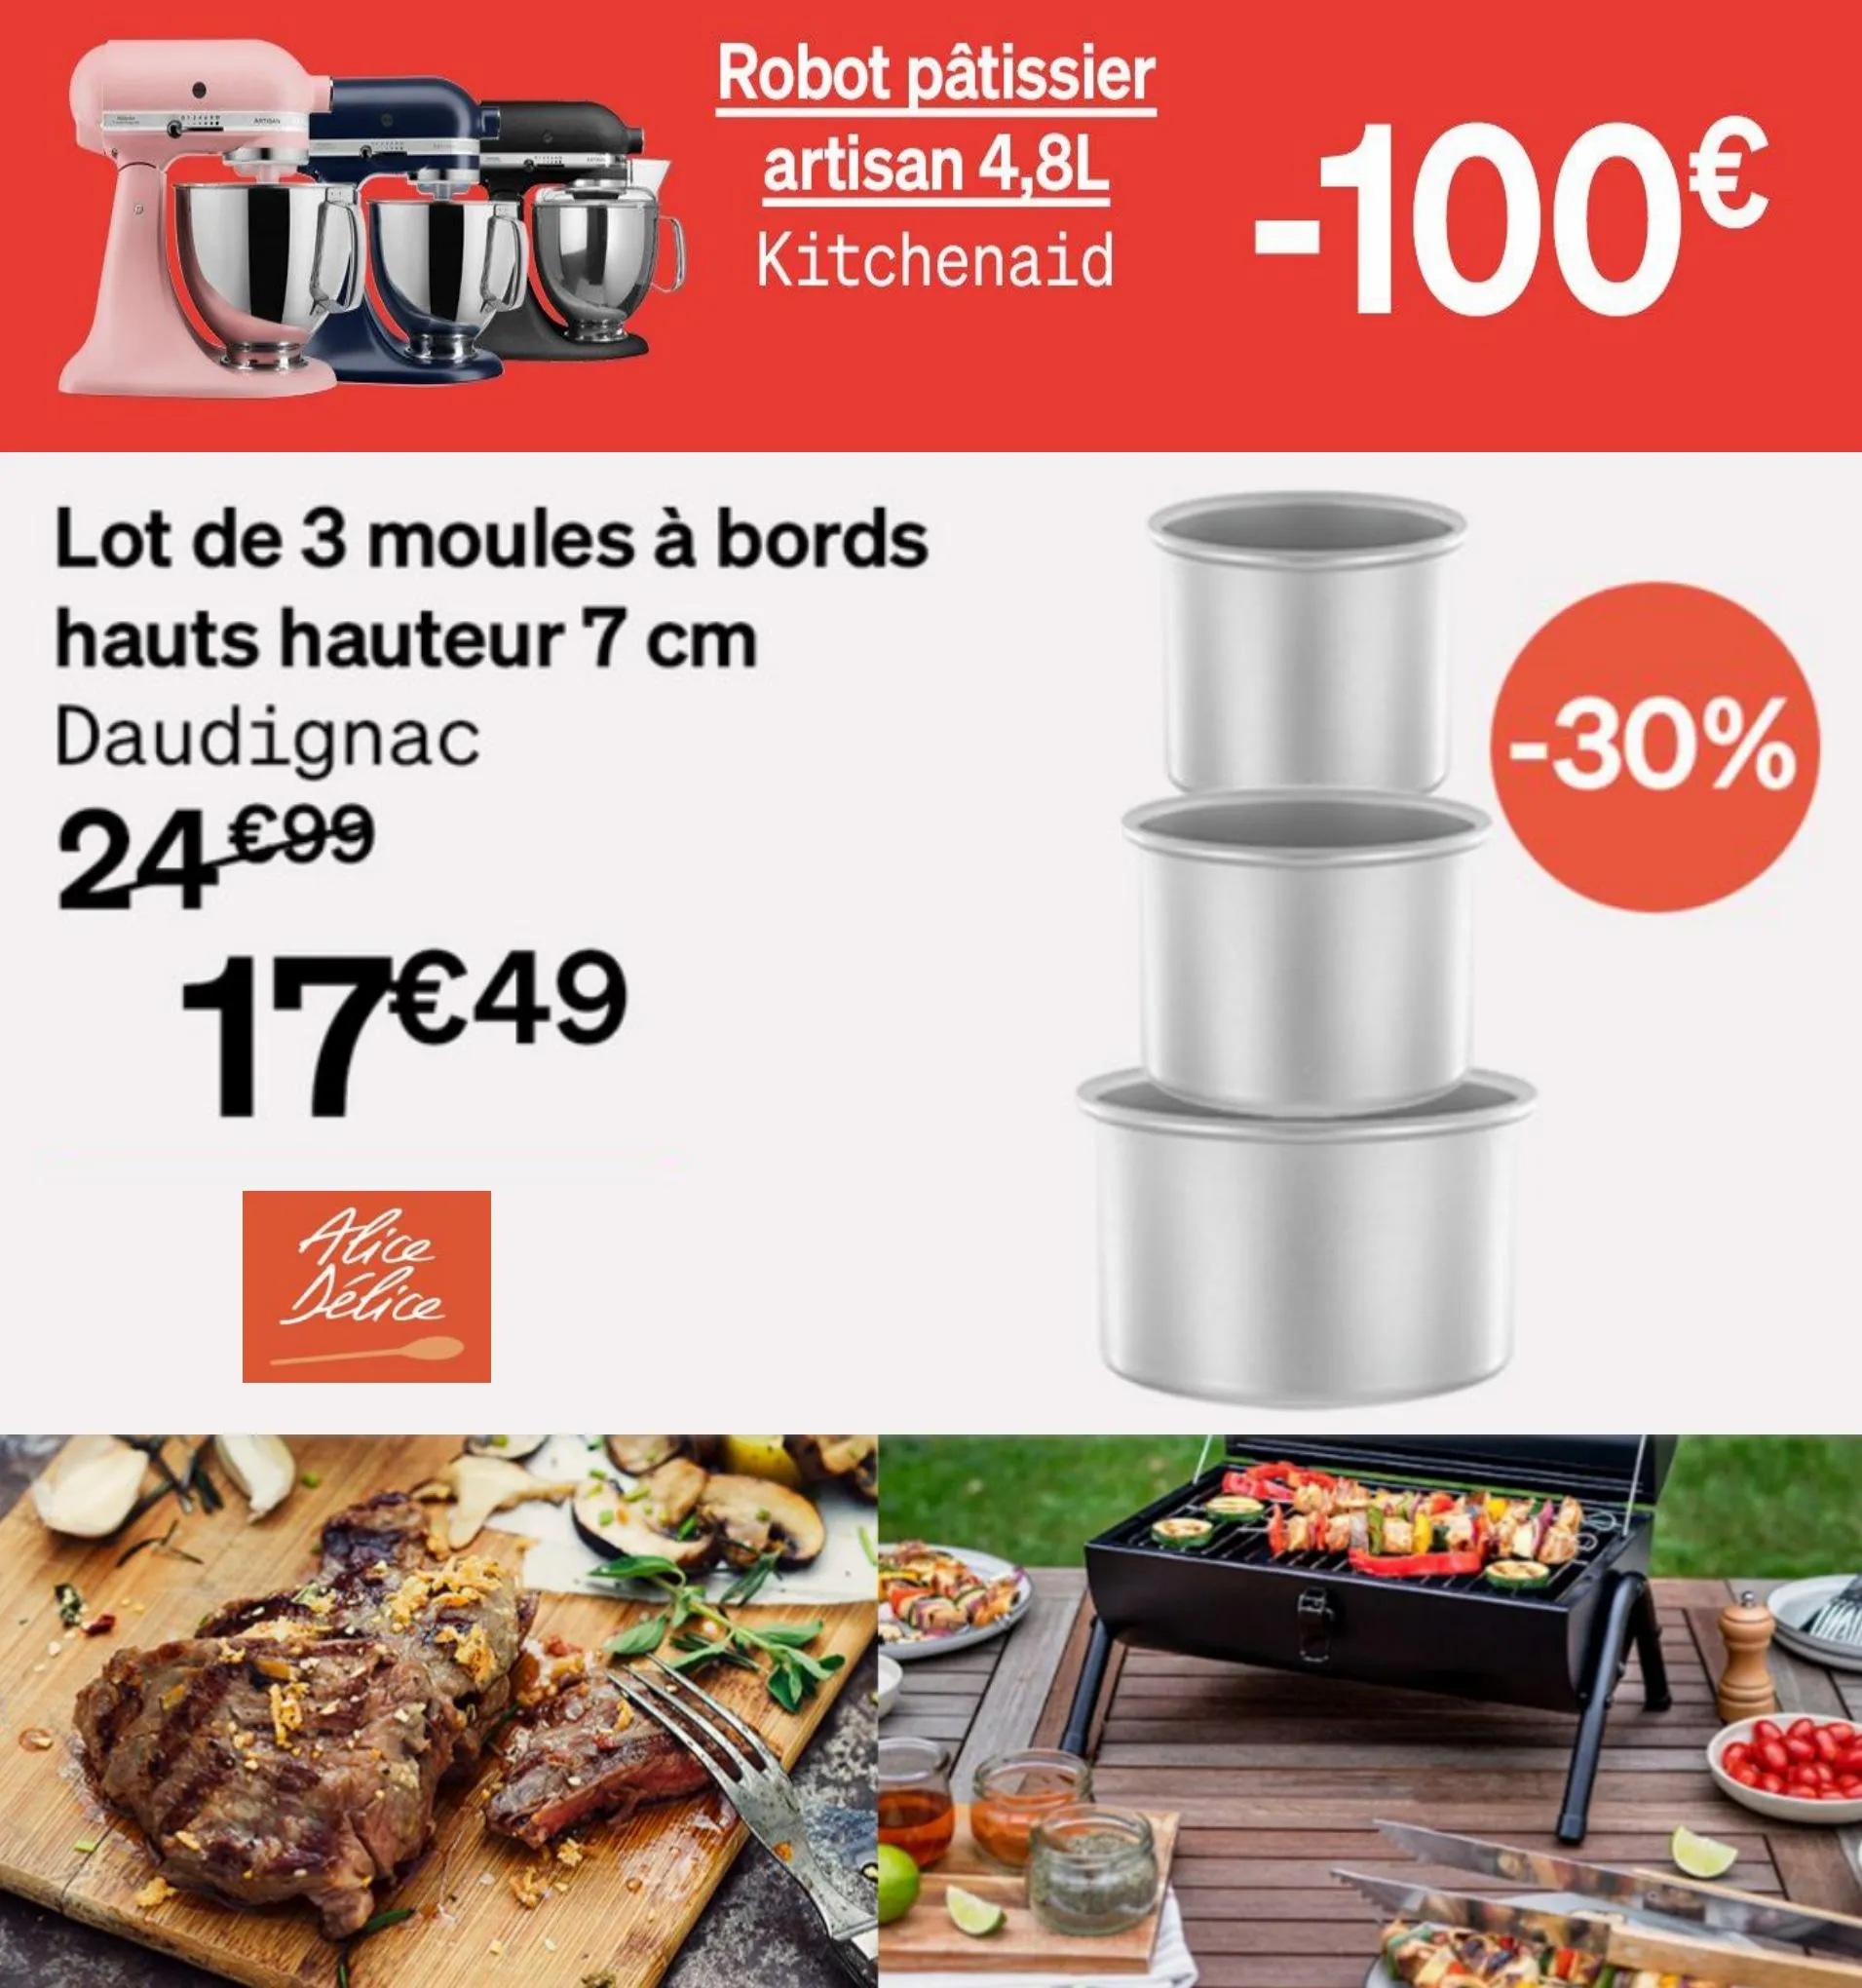 Catalogue Robot pâtisier artisan 4,8L -100€, page 00001